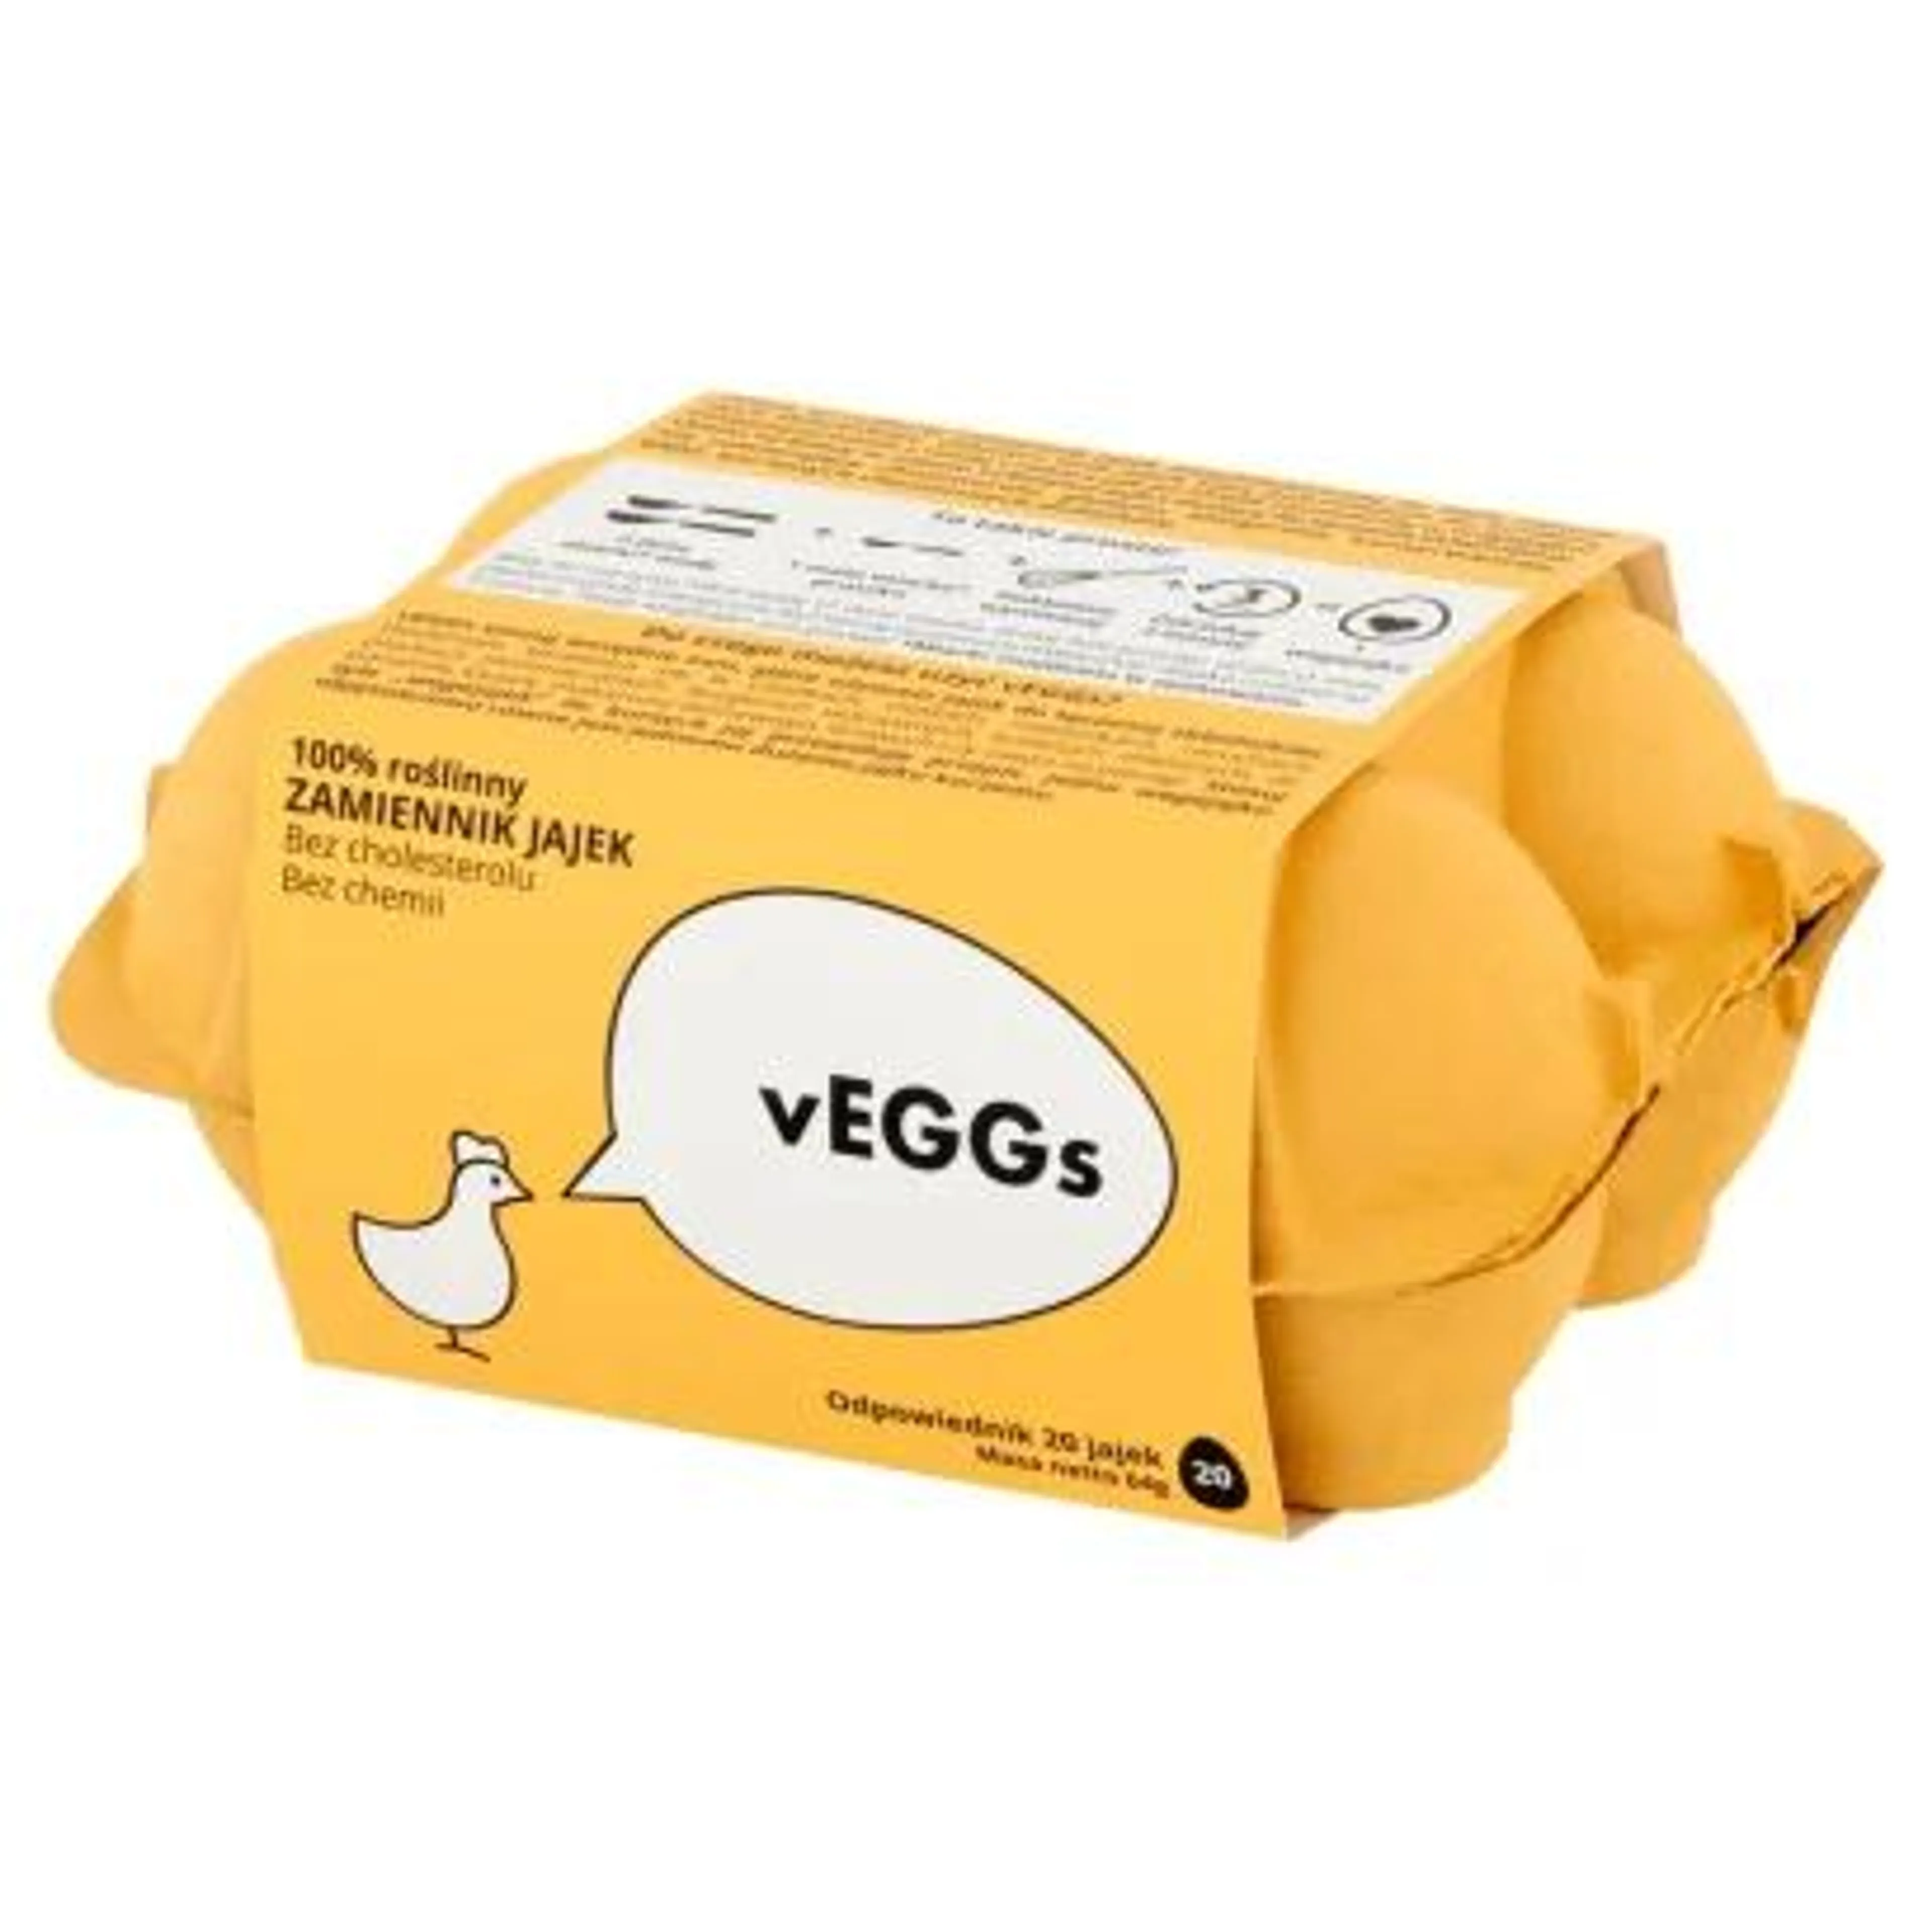 vEGGs - Zamiennik jajek w proszku